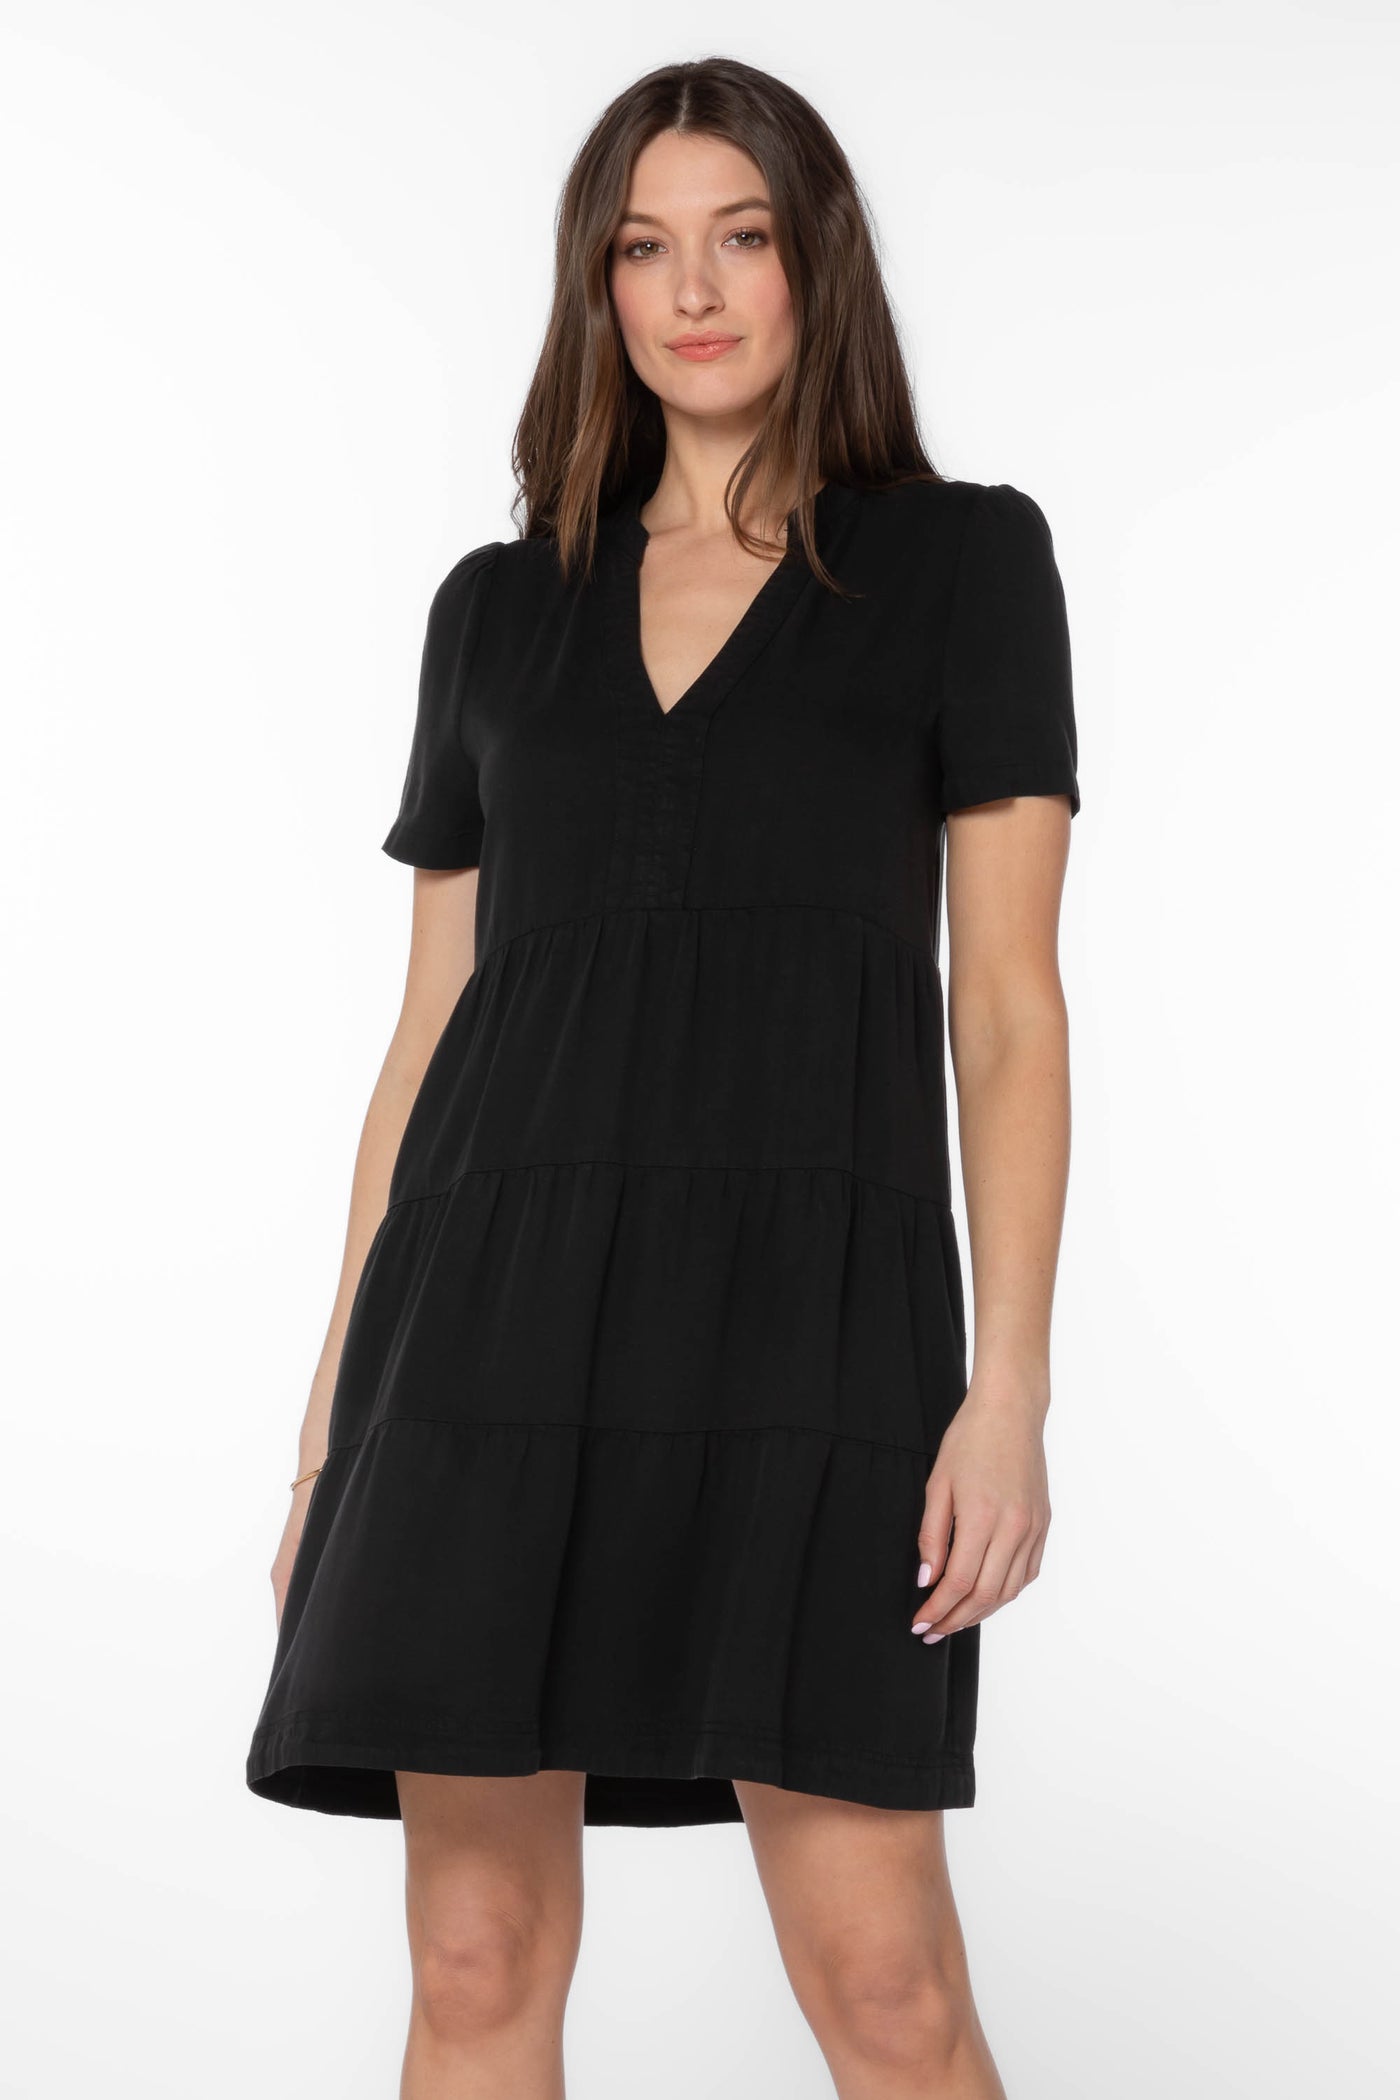 Lafayette Black Dress - Dresses - Velvet Heart Clothing